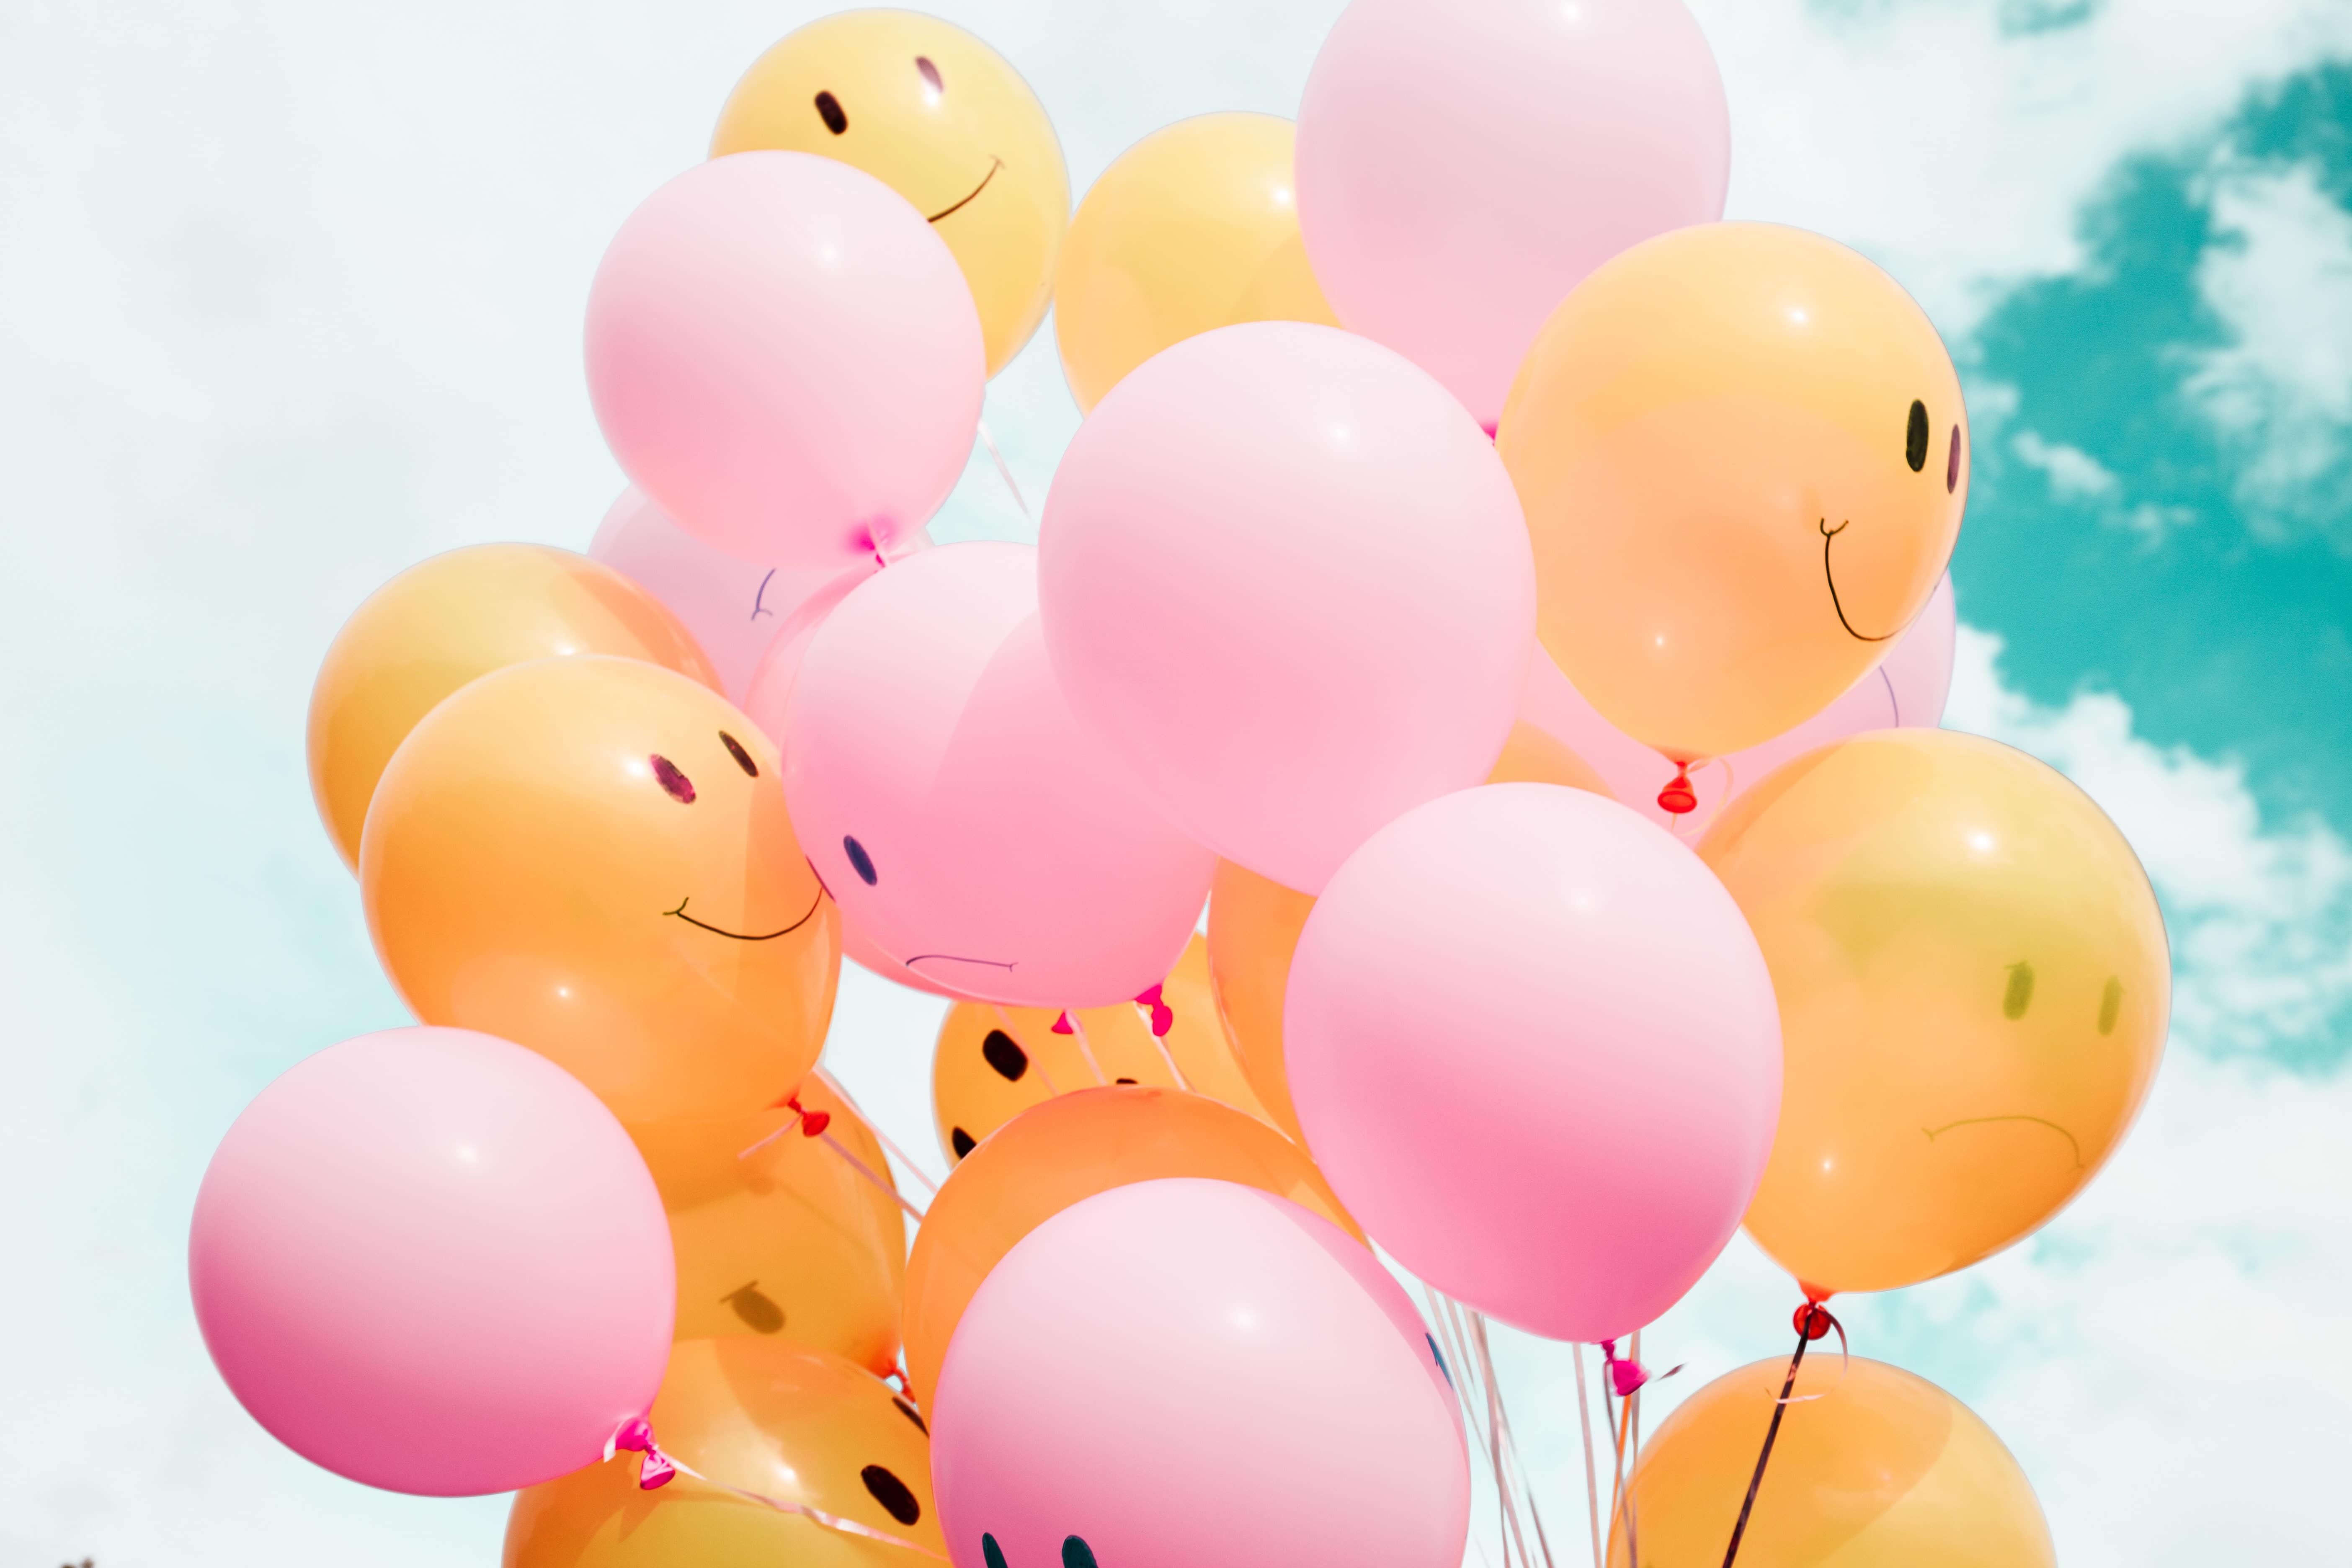 Rosa und orangene Luftballons im Himmel mit aufgemalten lachenden und weinenden Gesichtern